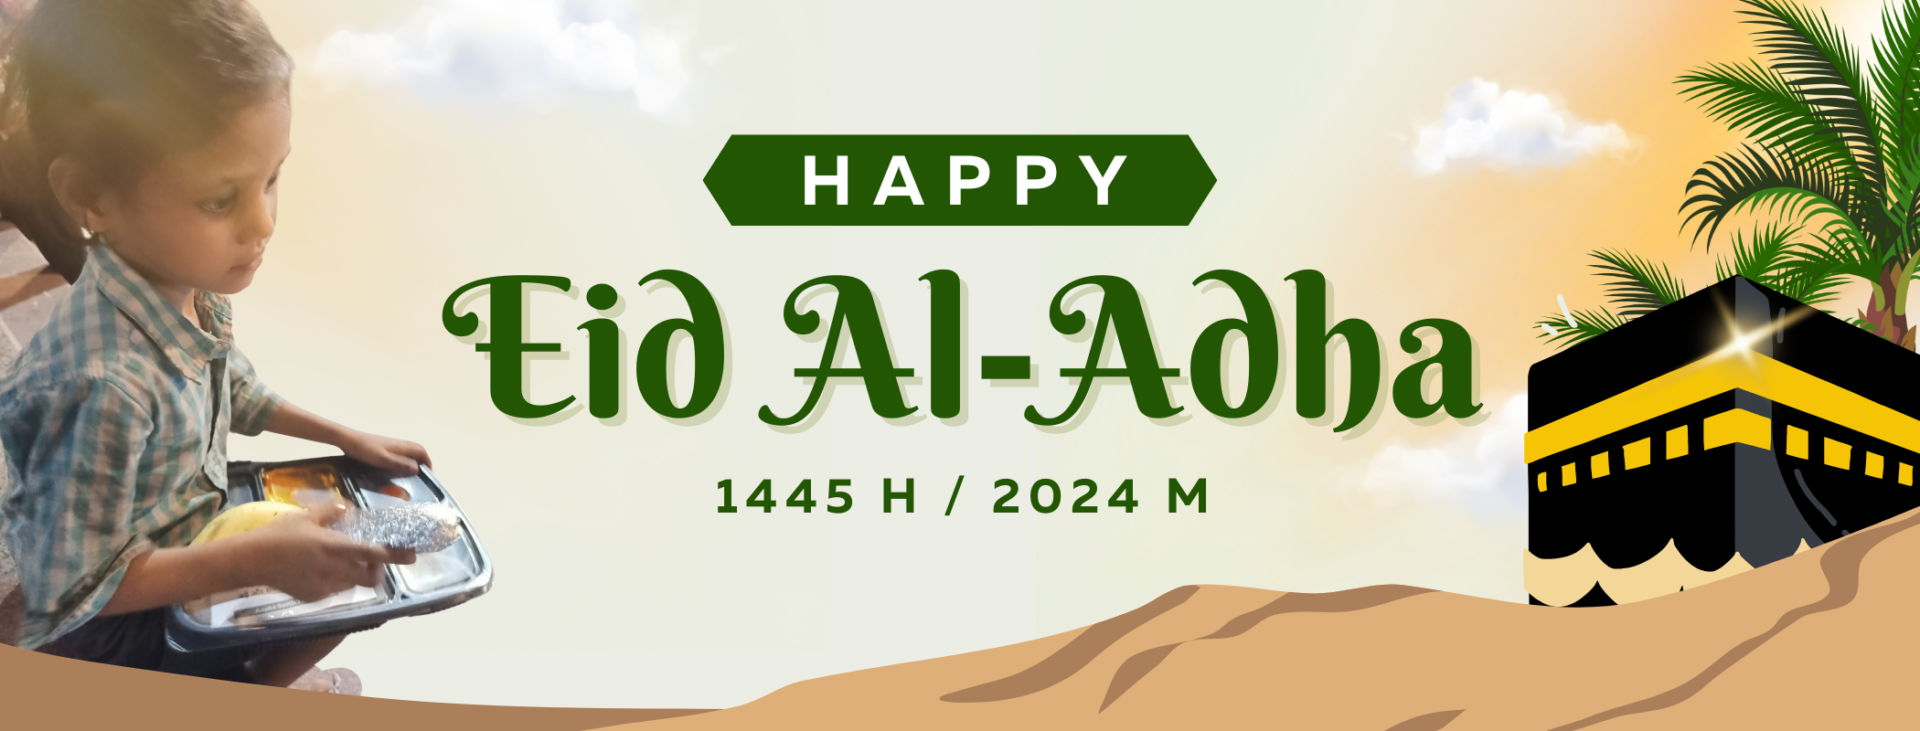 eid-al-adha-campaign